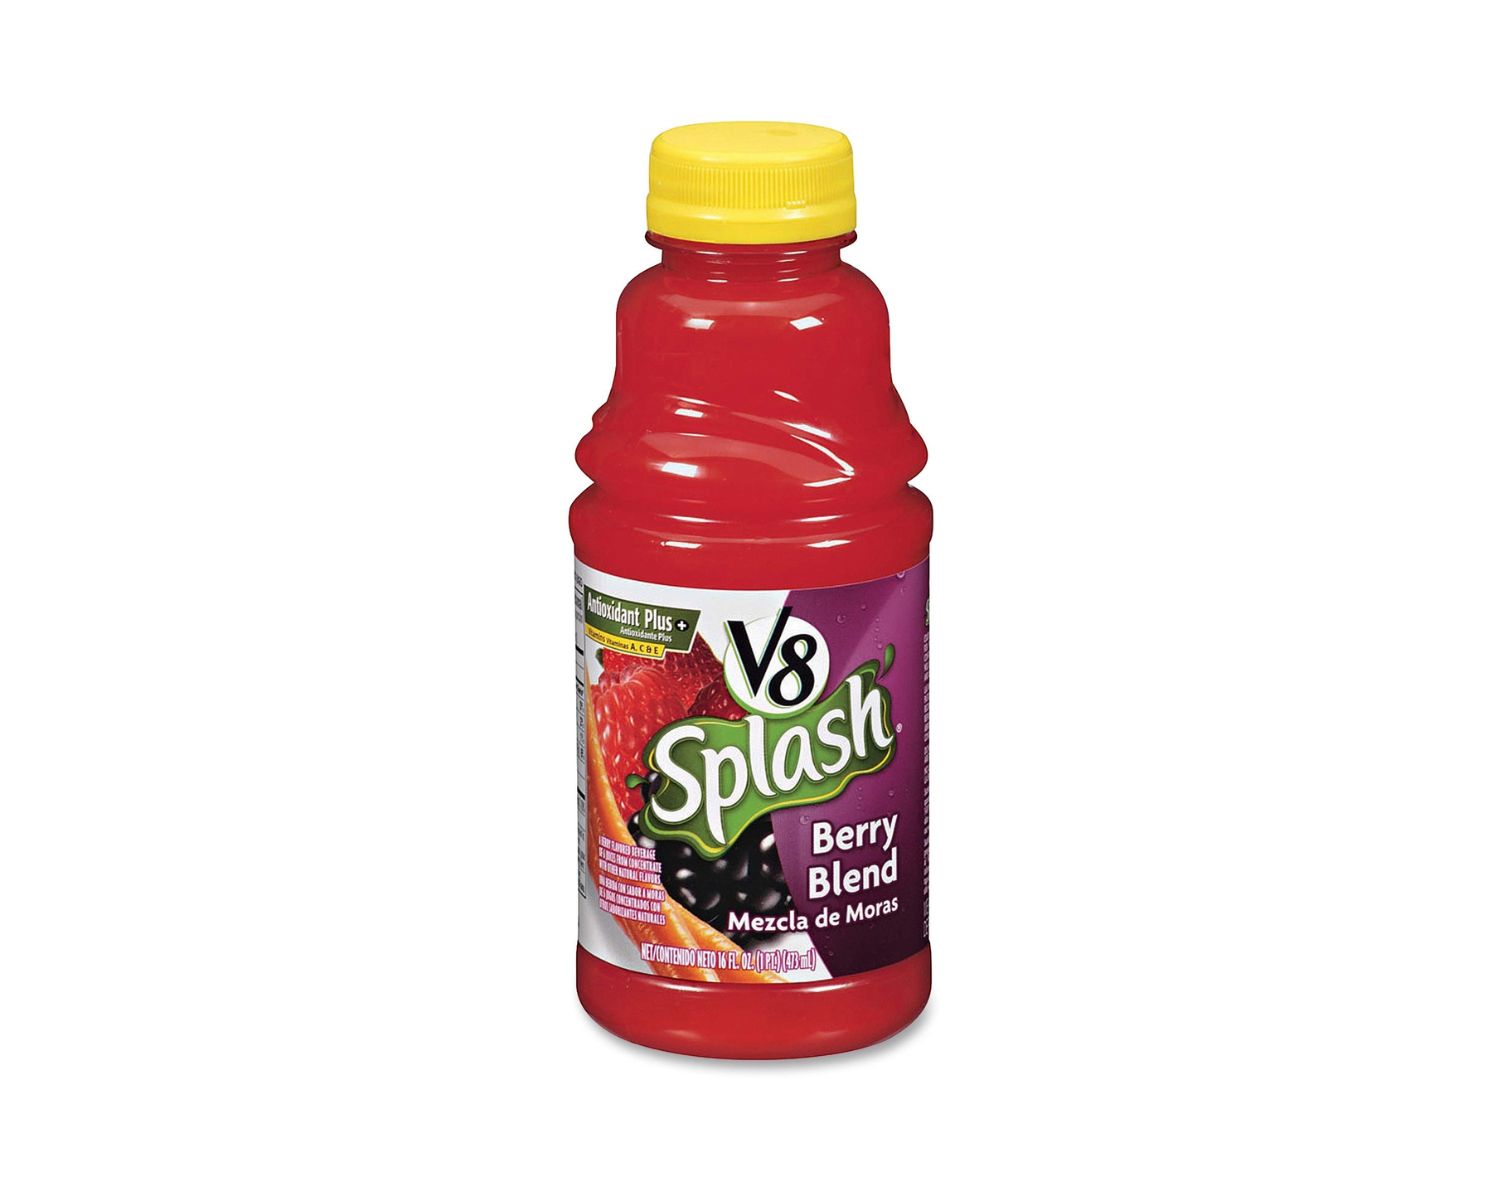 15-v18-splash-berry-blend-nutrition-facts